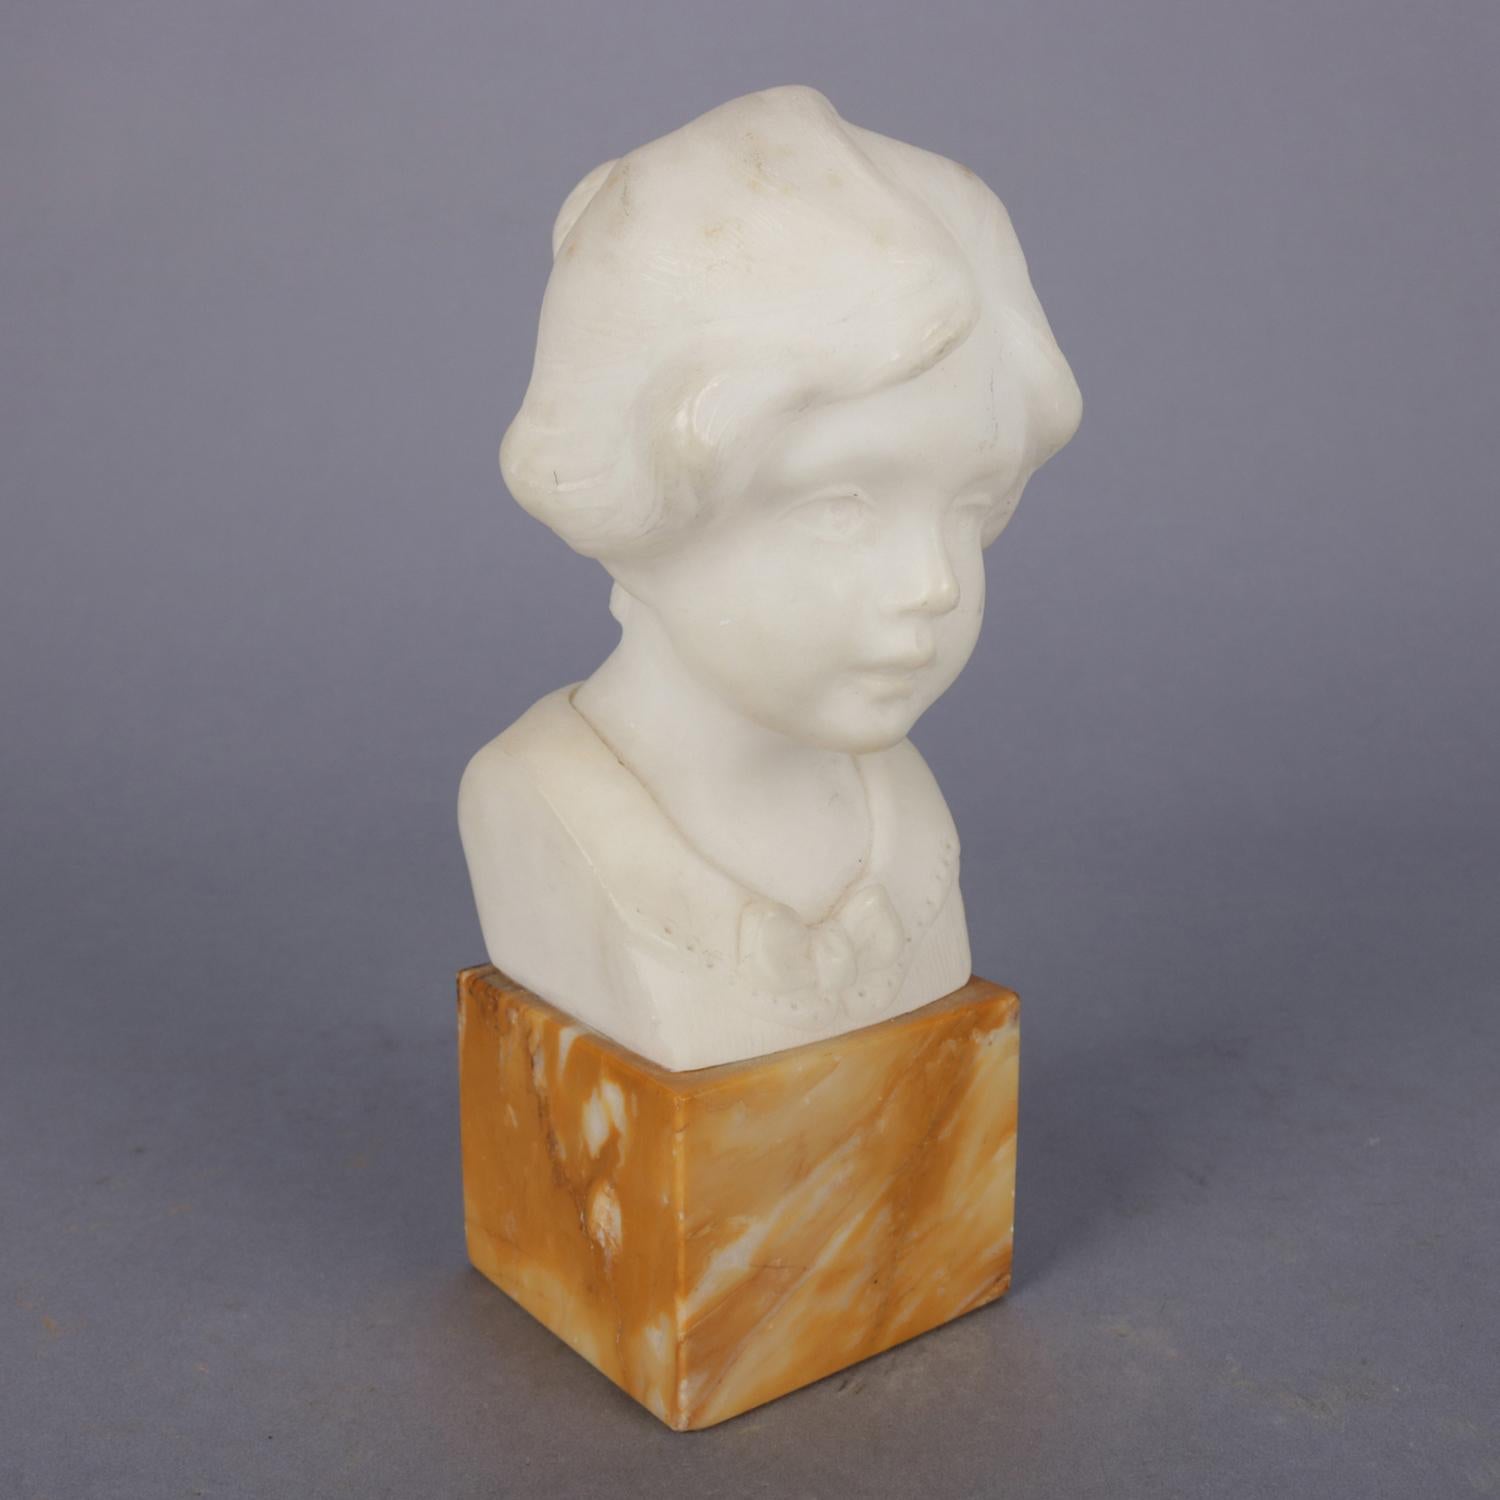 Hand-Carved Alabaster Portrait Bust Sculpture of Girl, Signed Greiwer 1